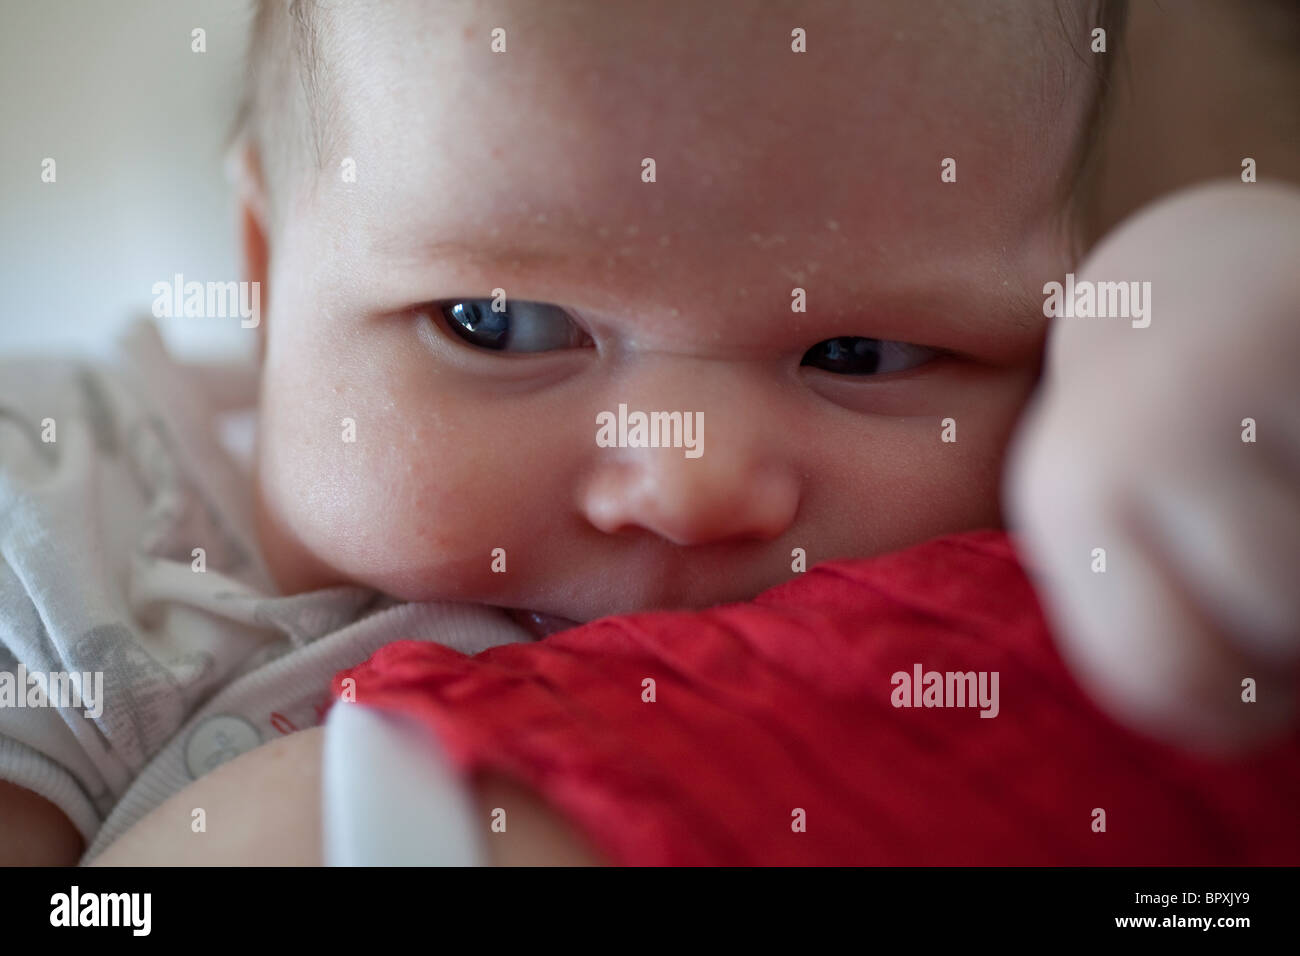 2 Mois Fille Bebe Avec La Peau Seche Sur Le Visage Photo Stock Alamy